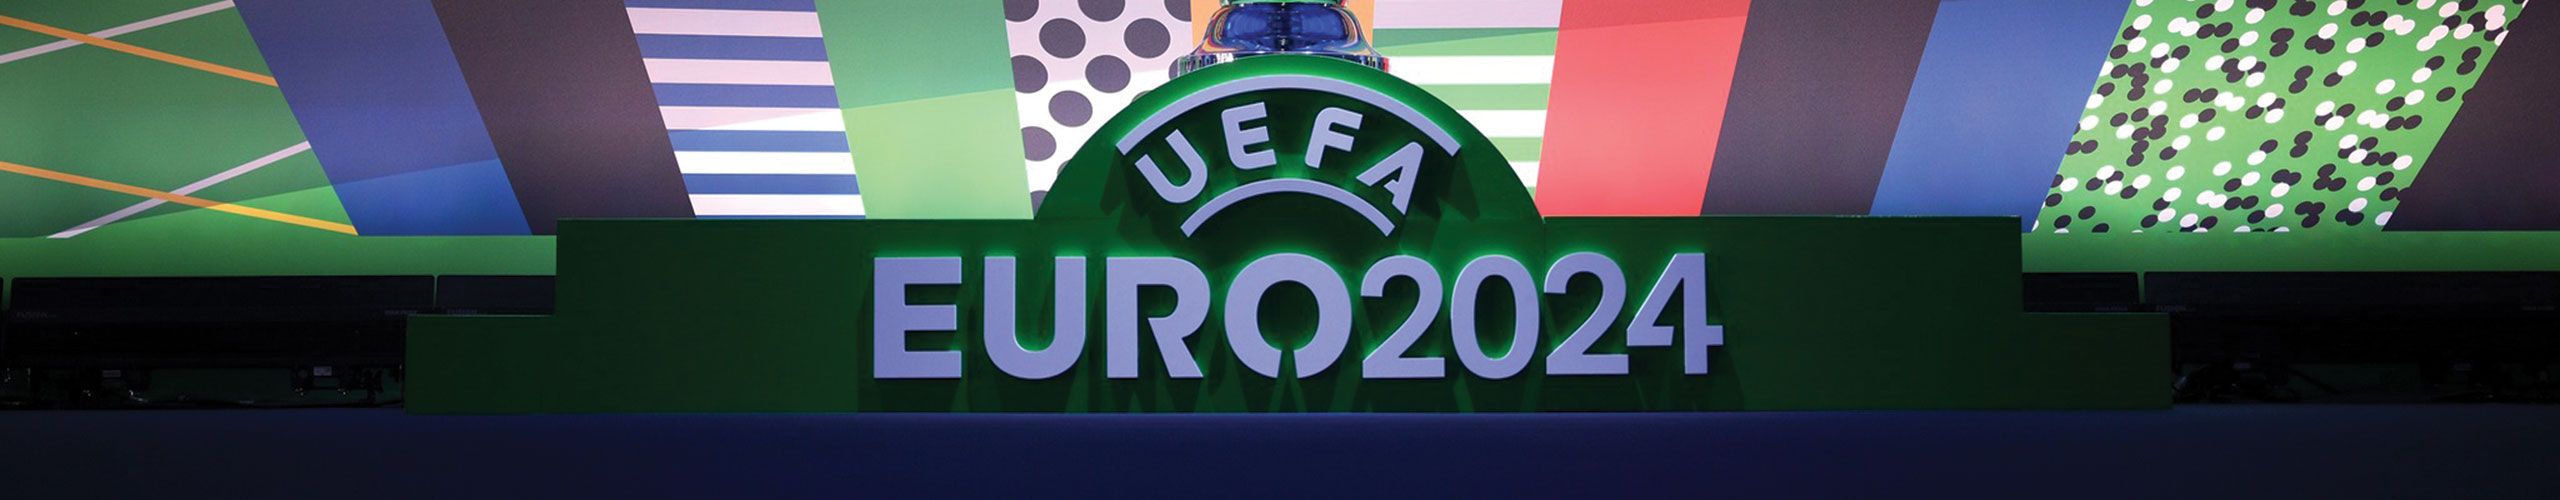  UEFA EURO 2024 GERMANY 